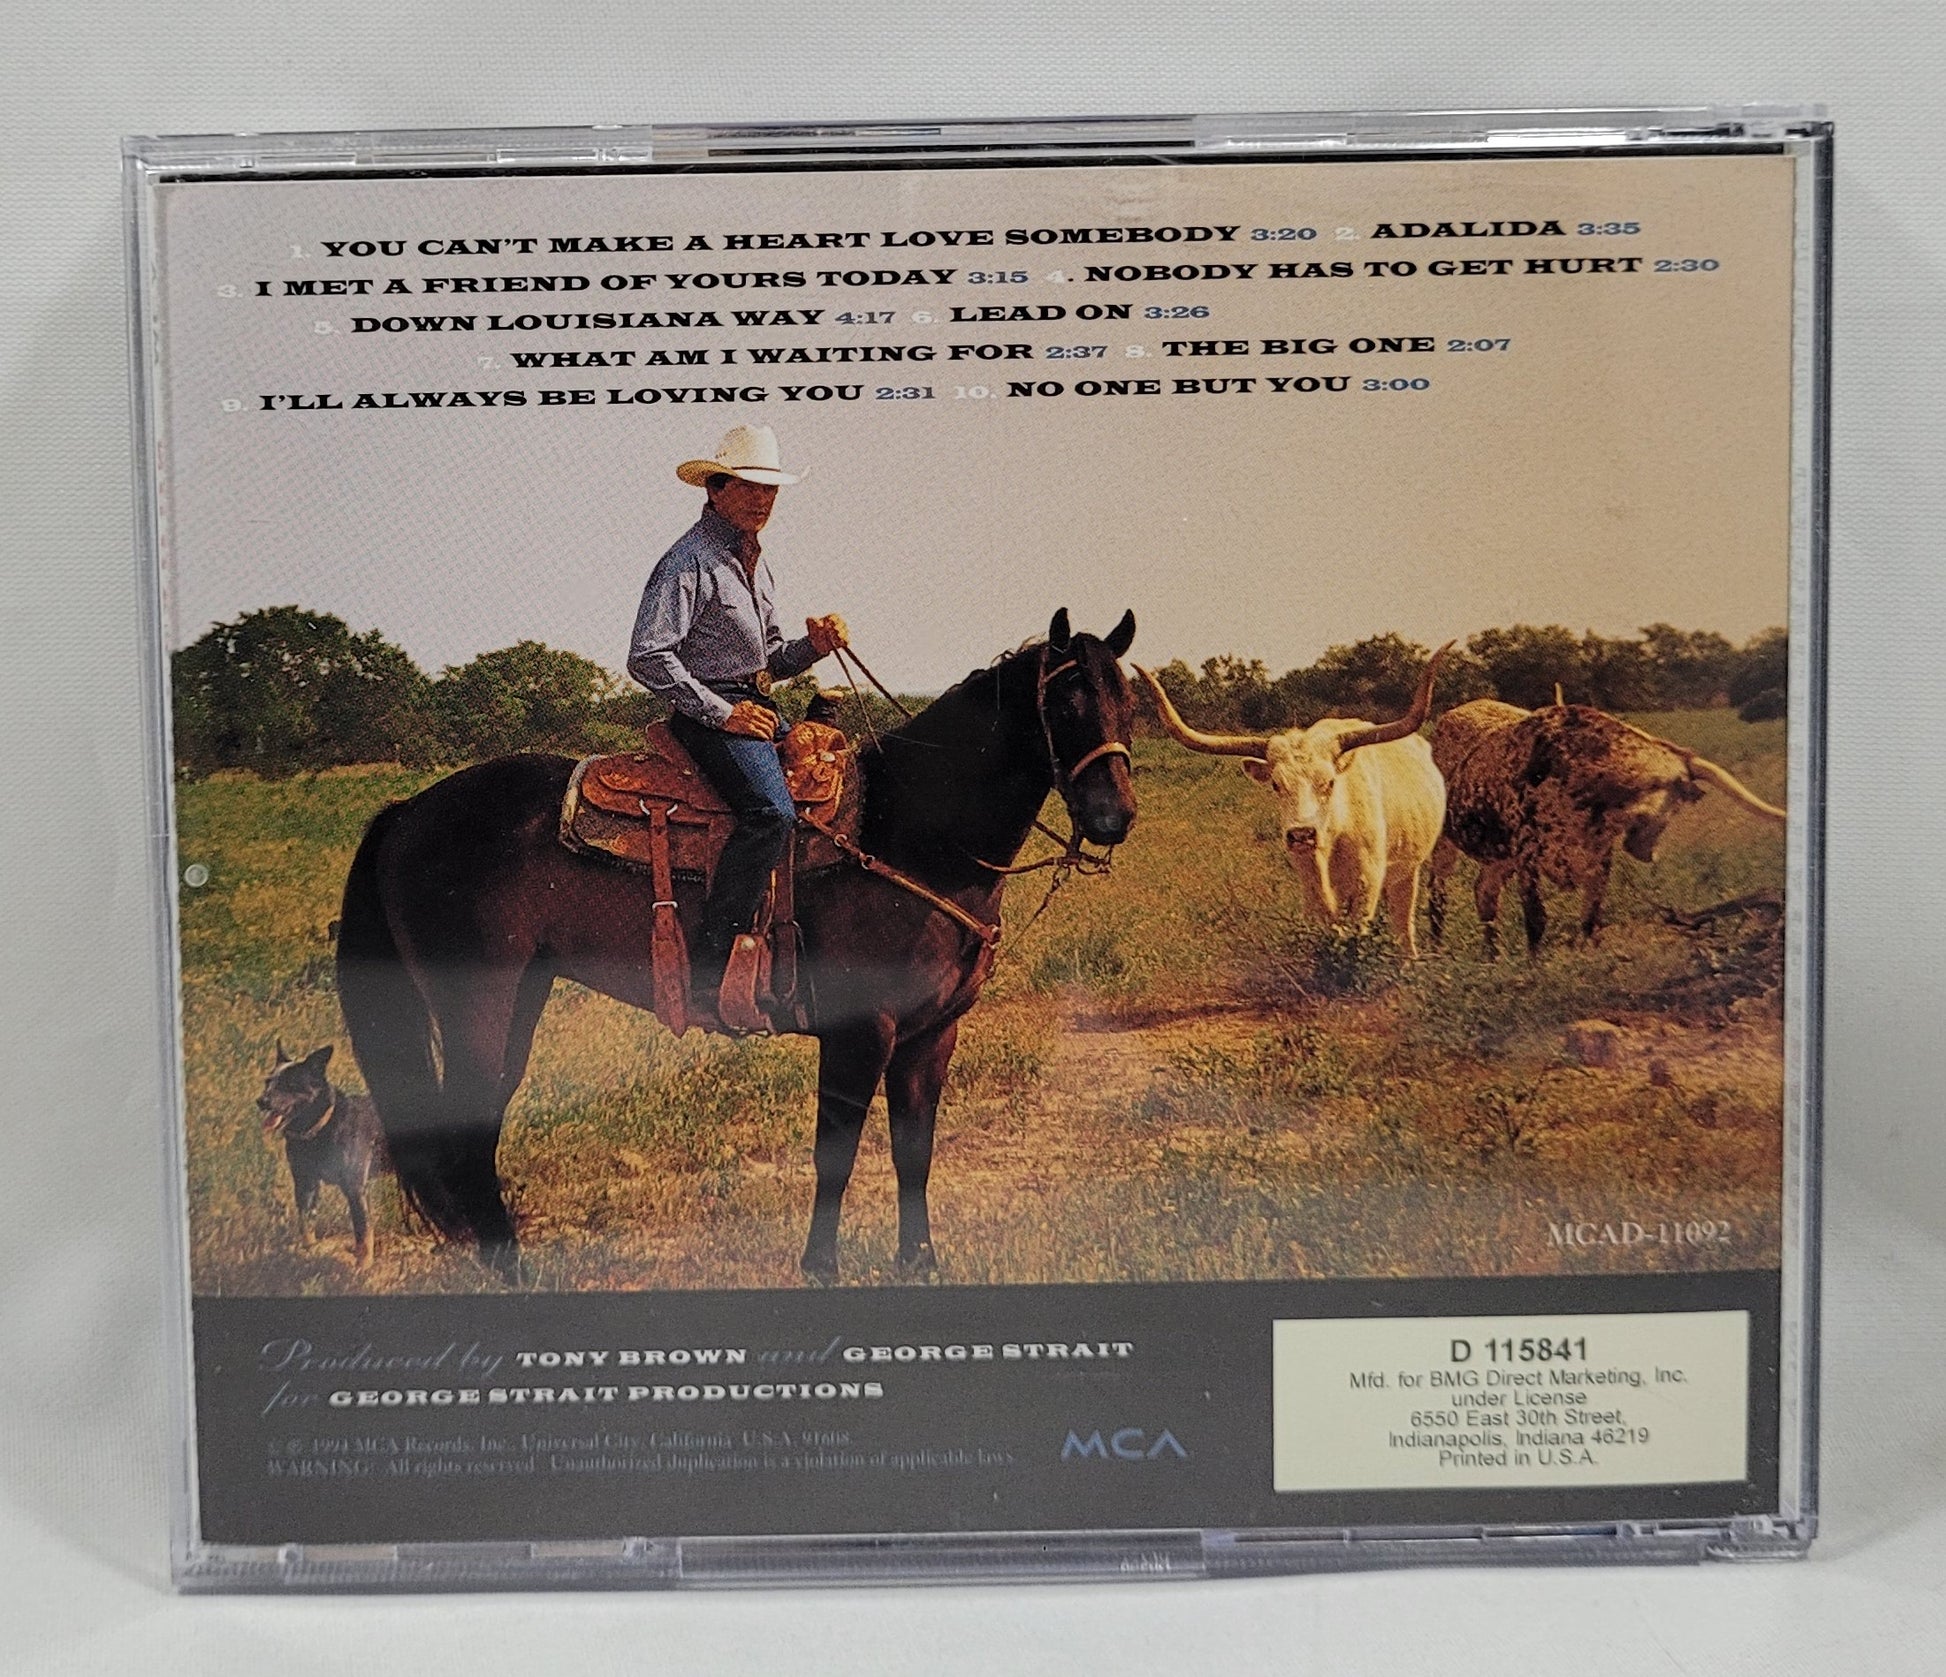 George Strait - Lead On [1994 Club Edition] [Used CD]